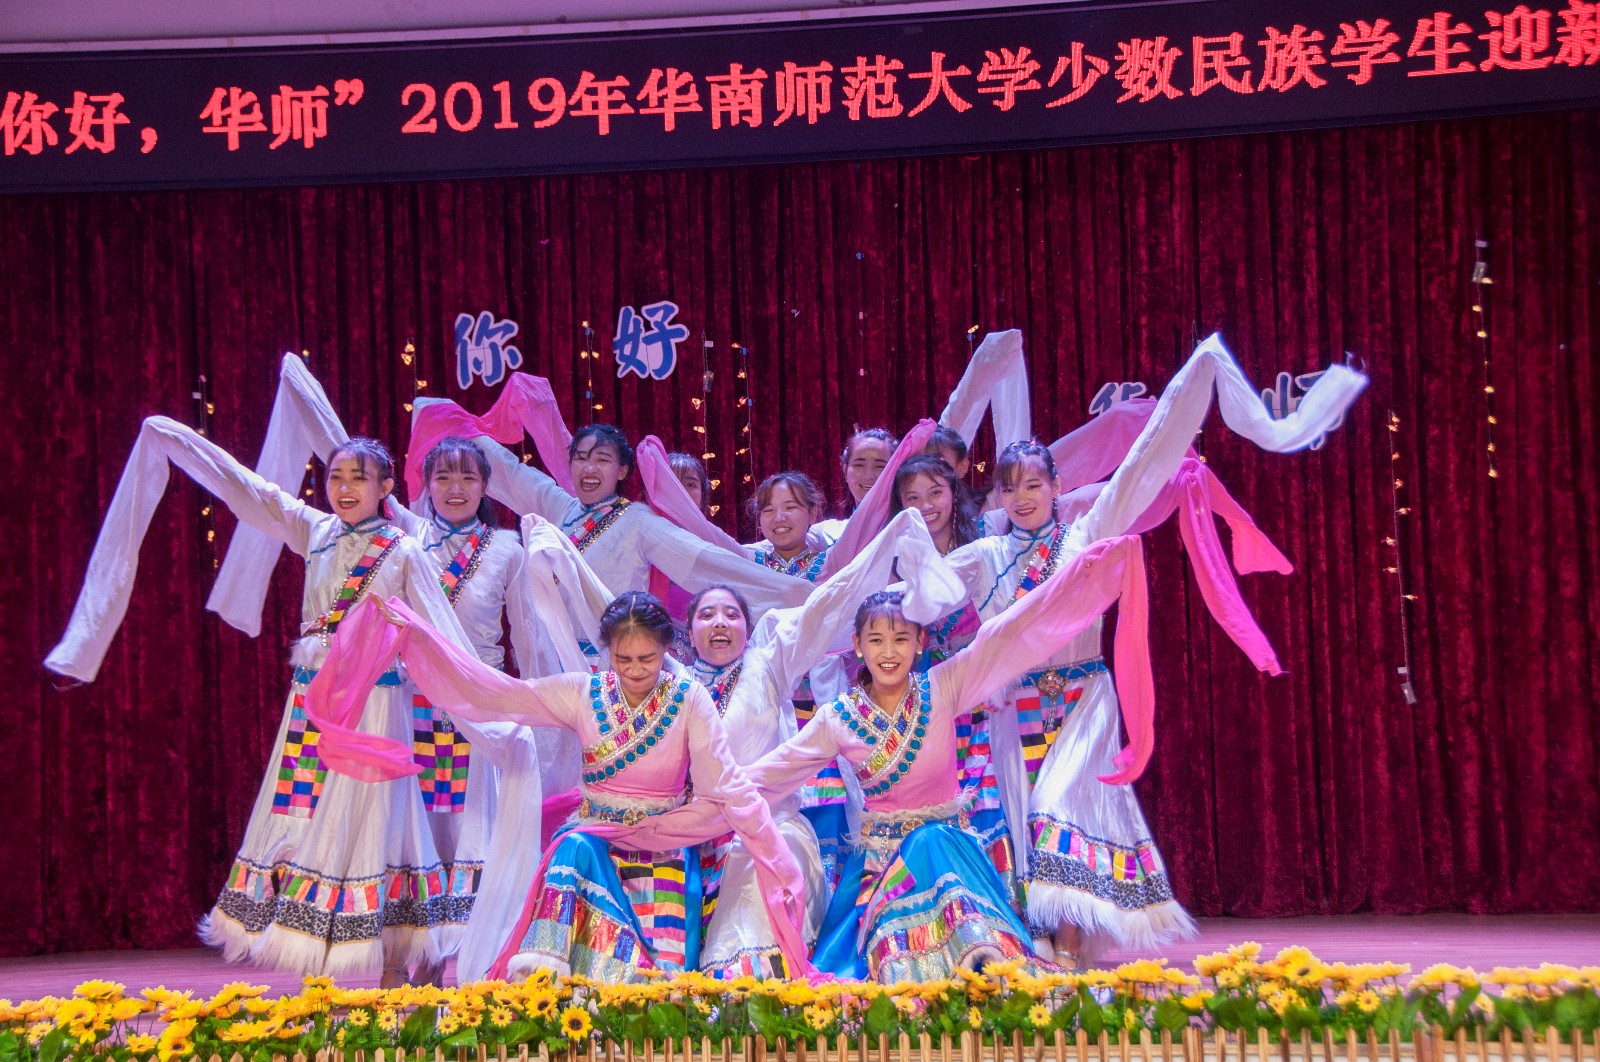 藏族舞蹈《青春踢踏》.jpg